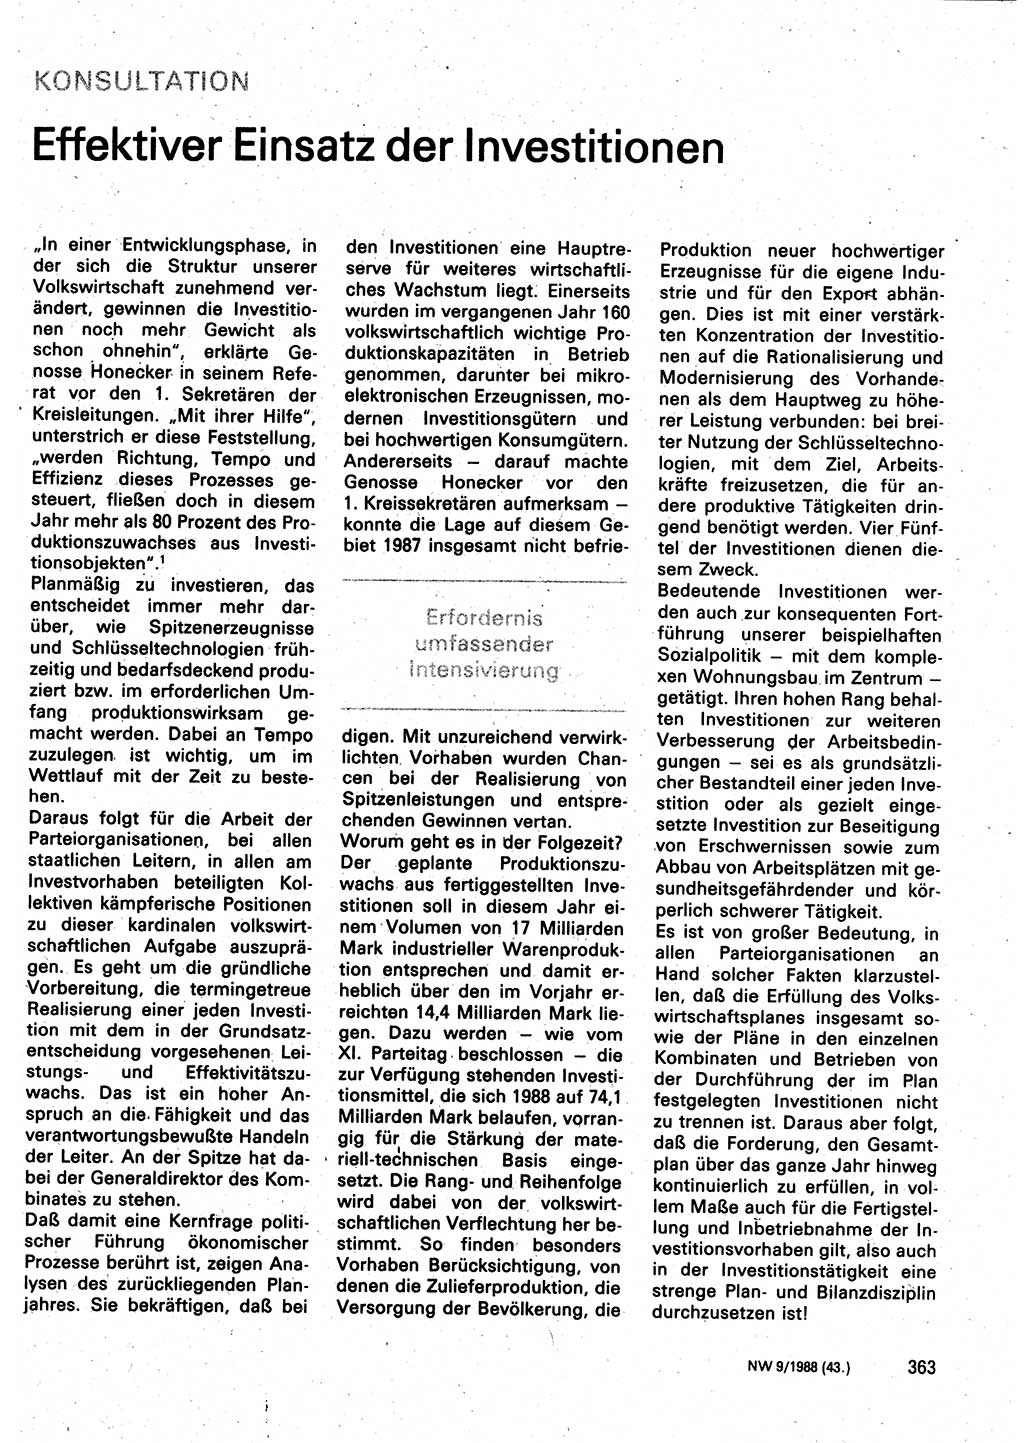 Neuer Weg (NW), Organ des Zentralkomitees (ZK) der SED (Sozialistische Einheitspartei Deutschlands) für Fragen des Parteilebens, 43. Jahrgang [Deutsche Demokratische Republik (DDR)] 1988, Seite 363 (NW ZK SED DDR 1988, S. 363)